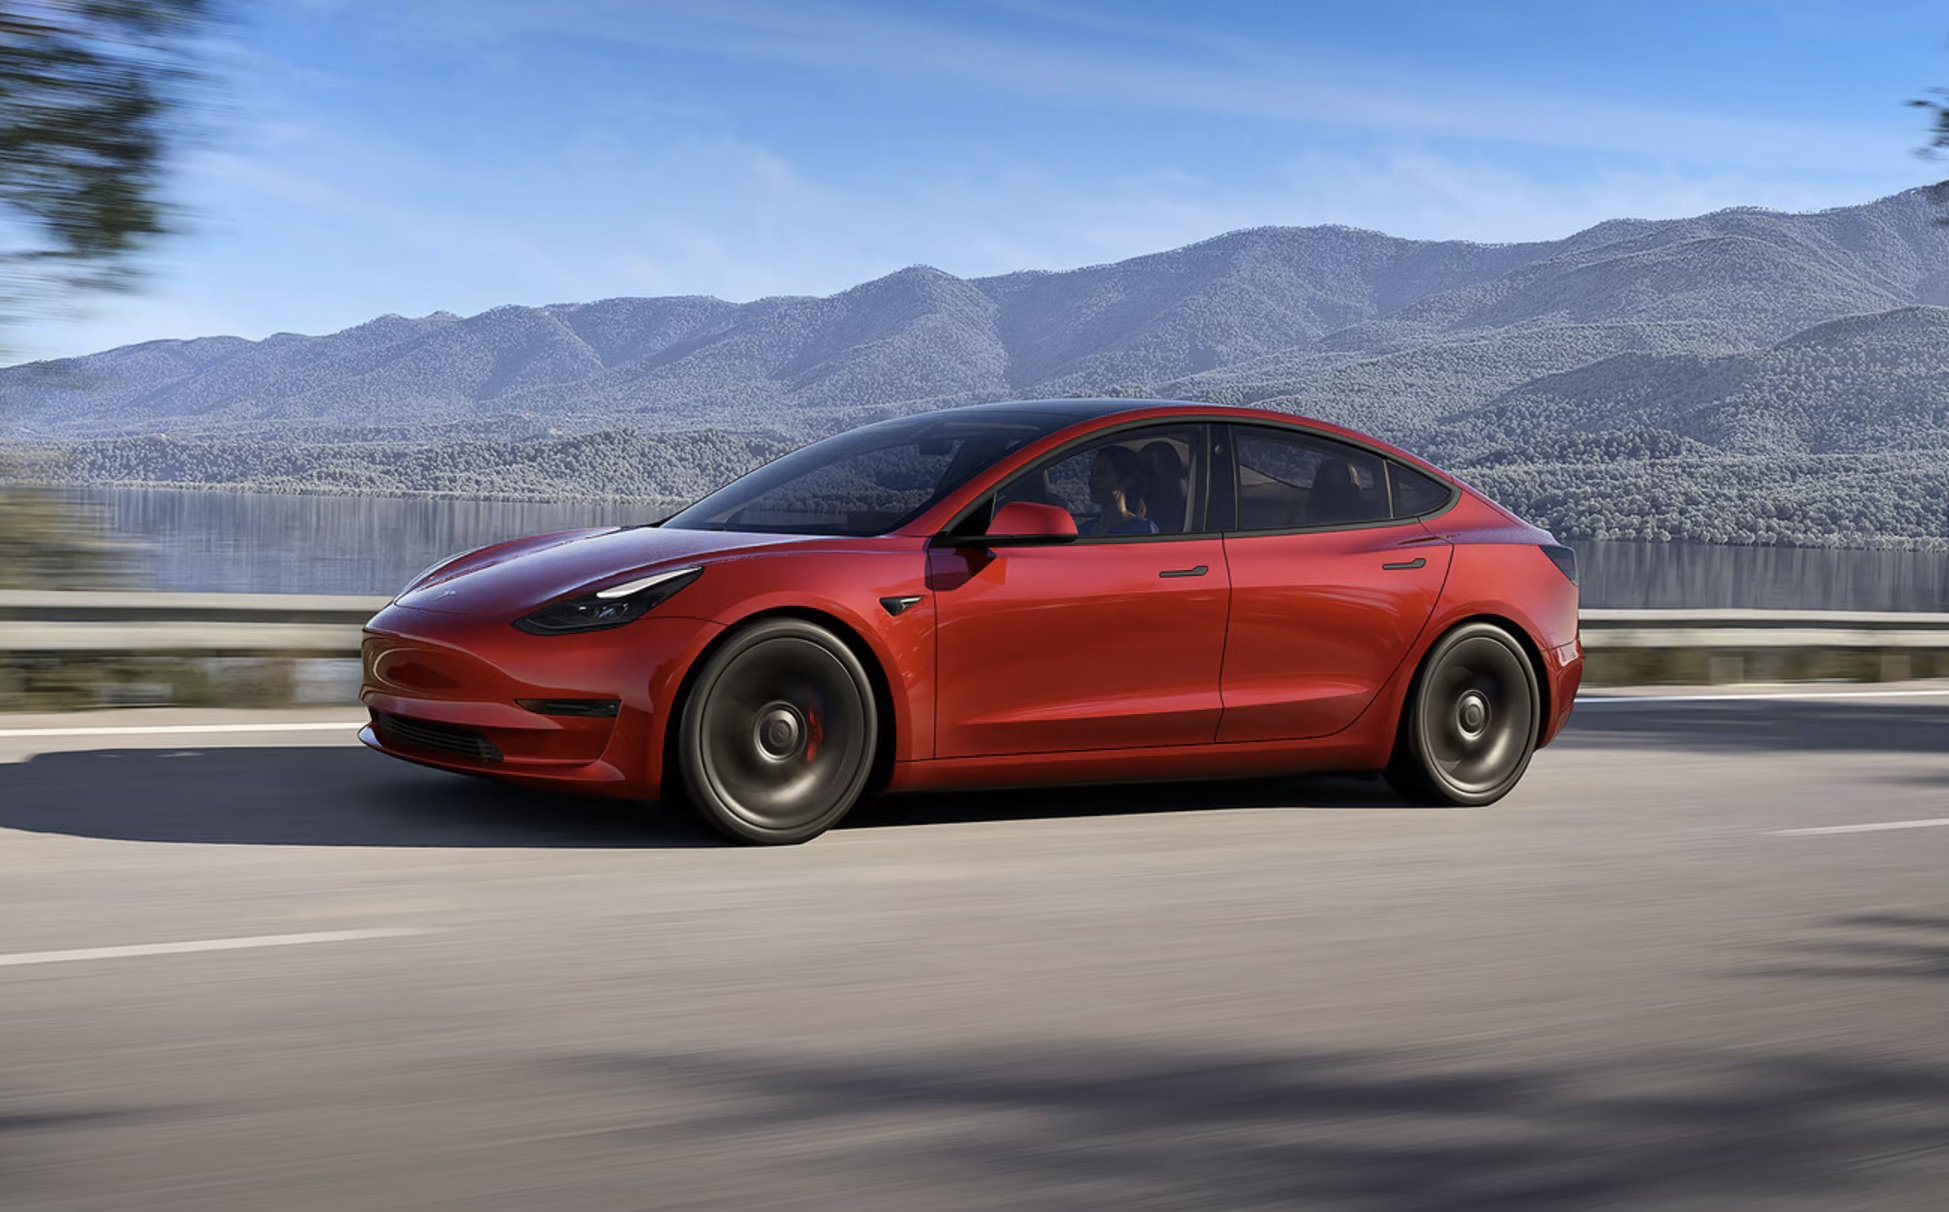 La conduite autonome de niveau 3 serait déjà prévue dans le logiciel des voitures Tesla. © Tesla